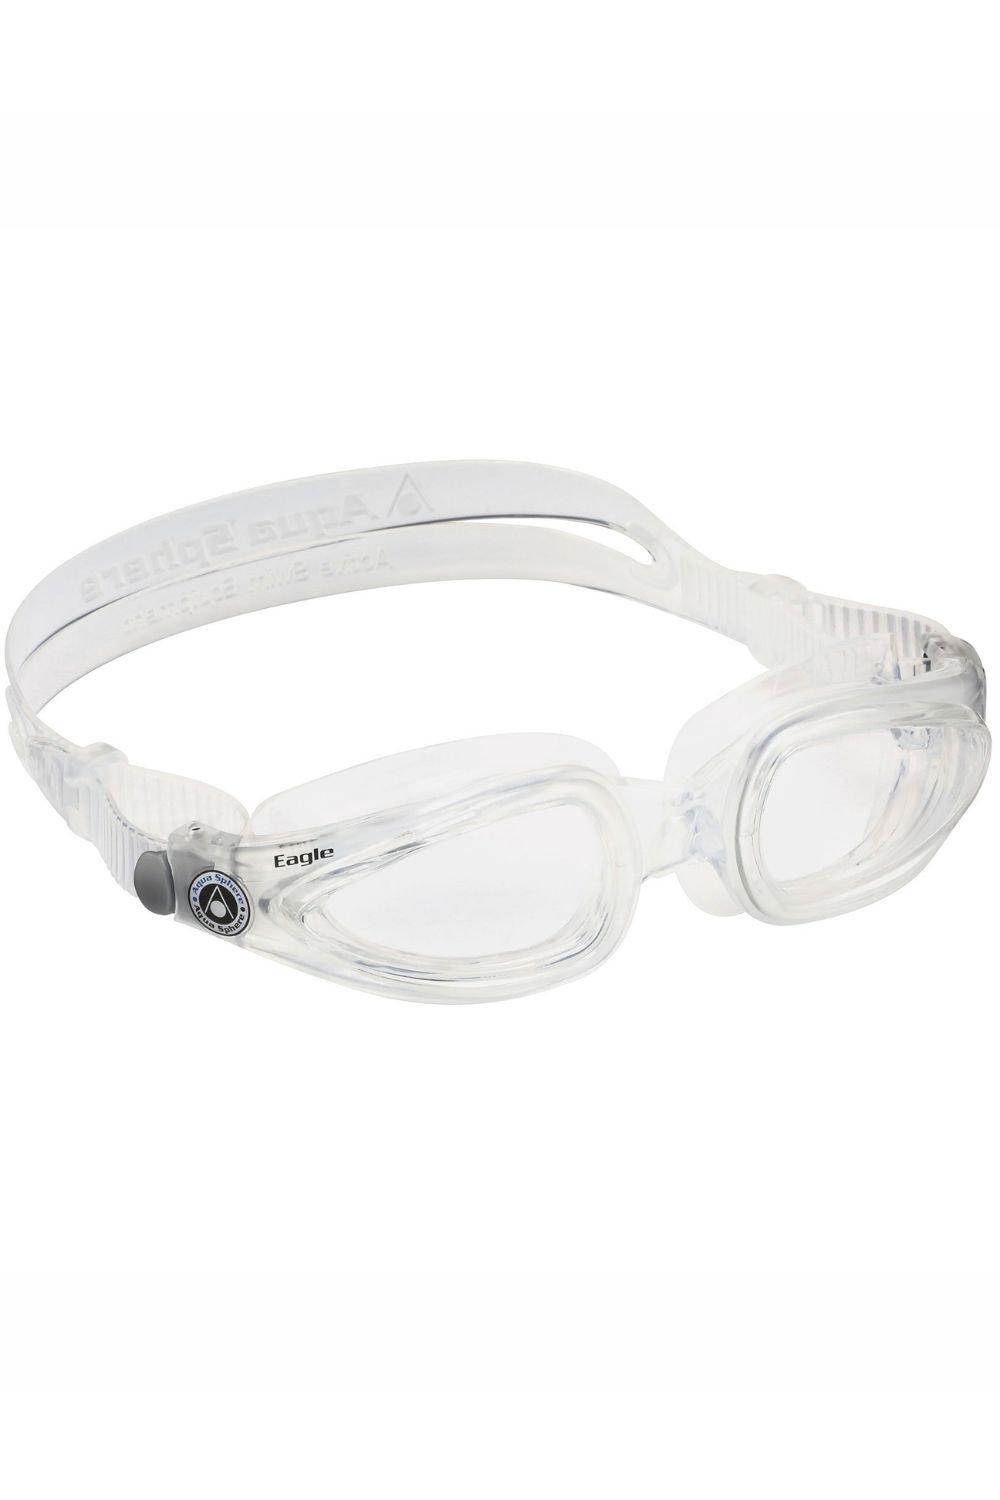 Оптические очки для плавания Eagle Aquasphere, прозрачный